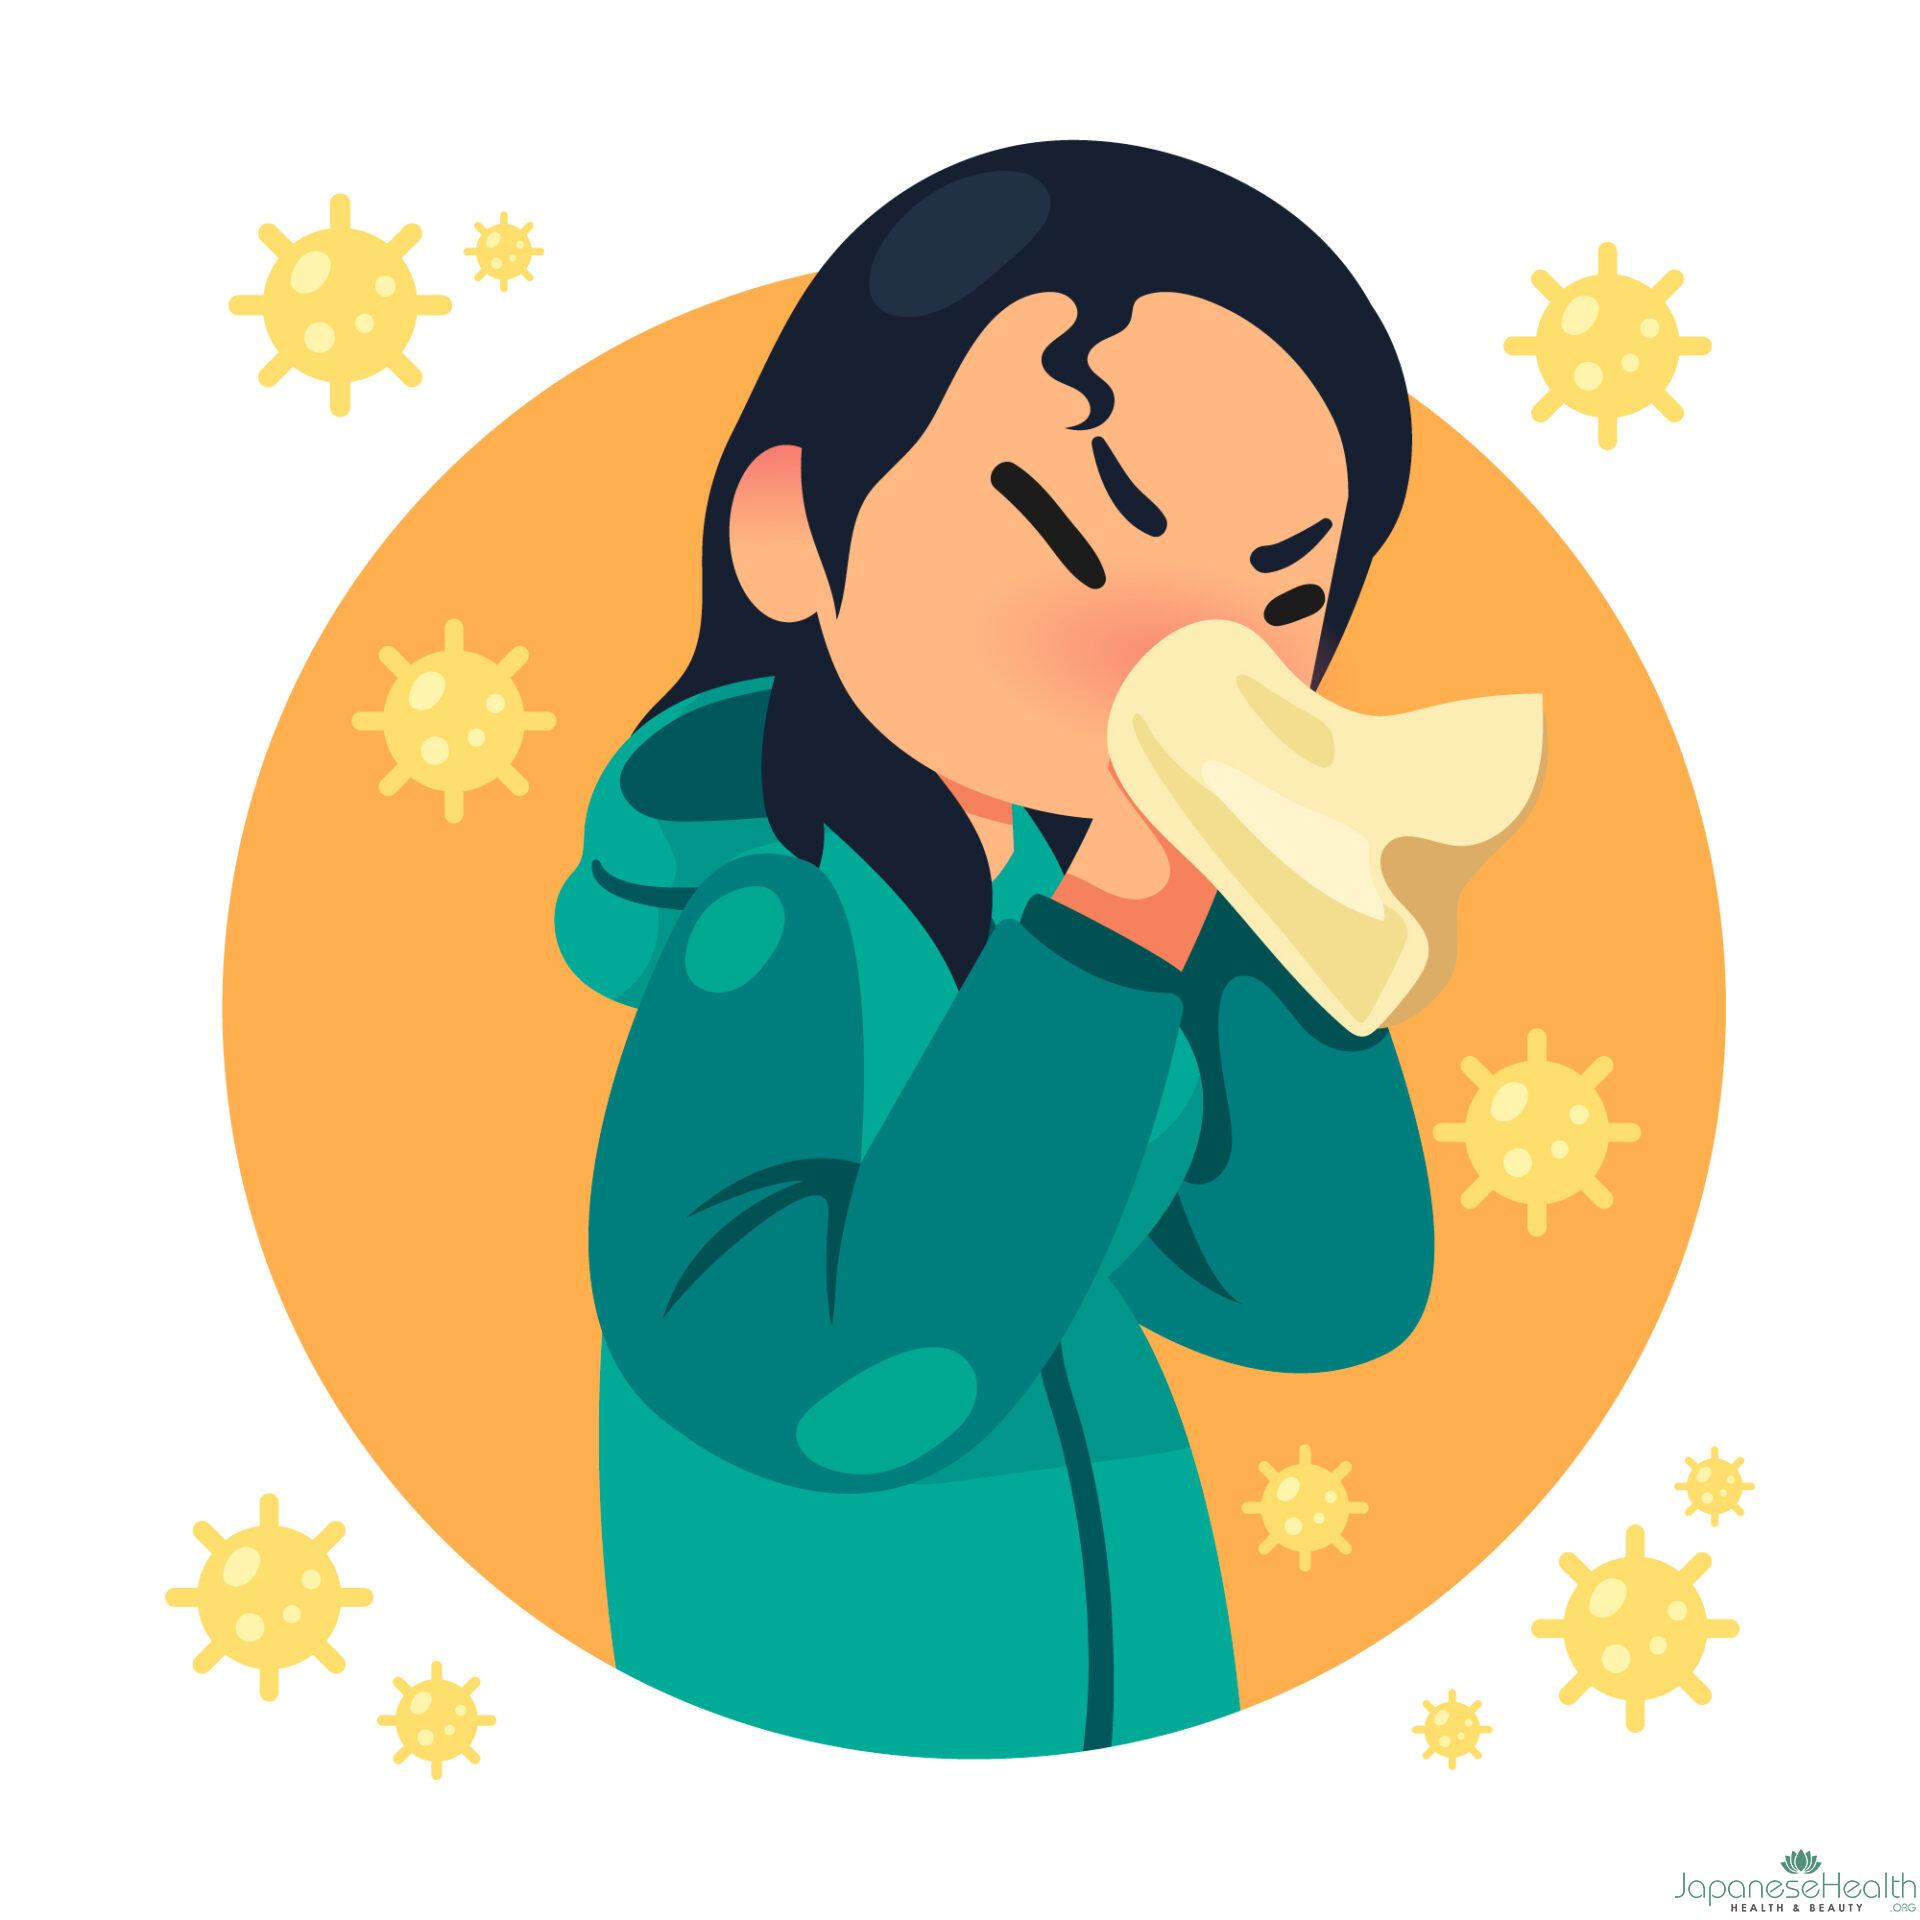 花粉症は、スギやヒノキなどの花粉が原因で起こるアレルギー疾患です。